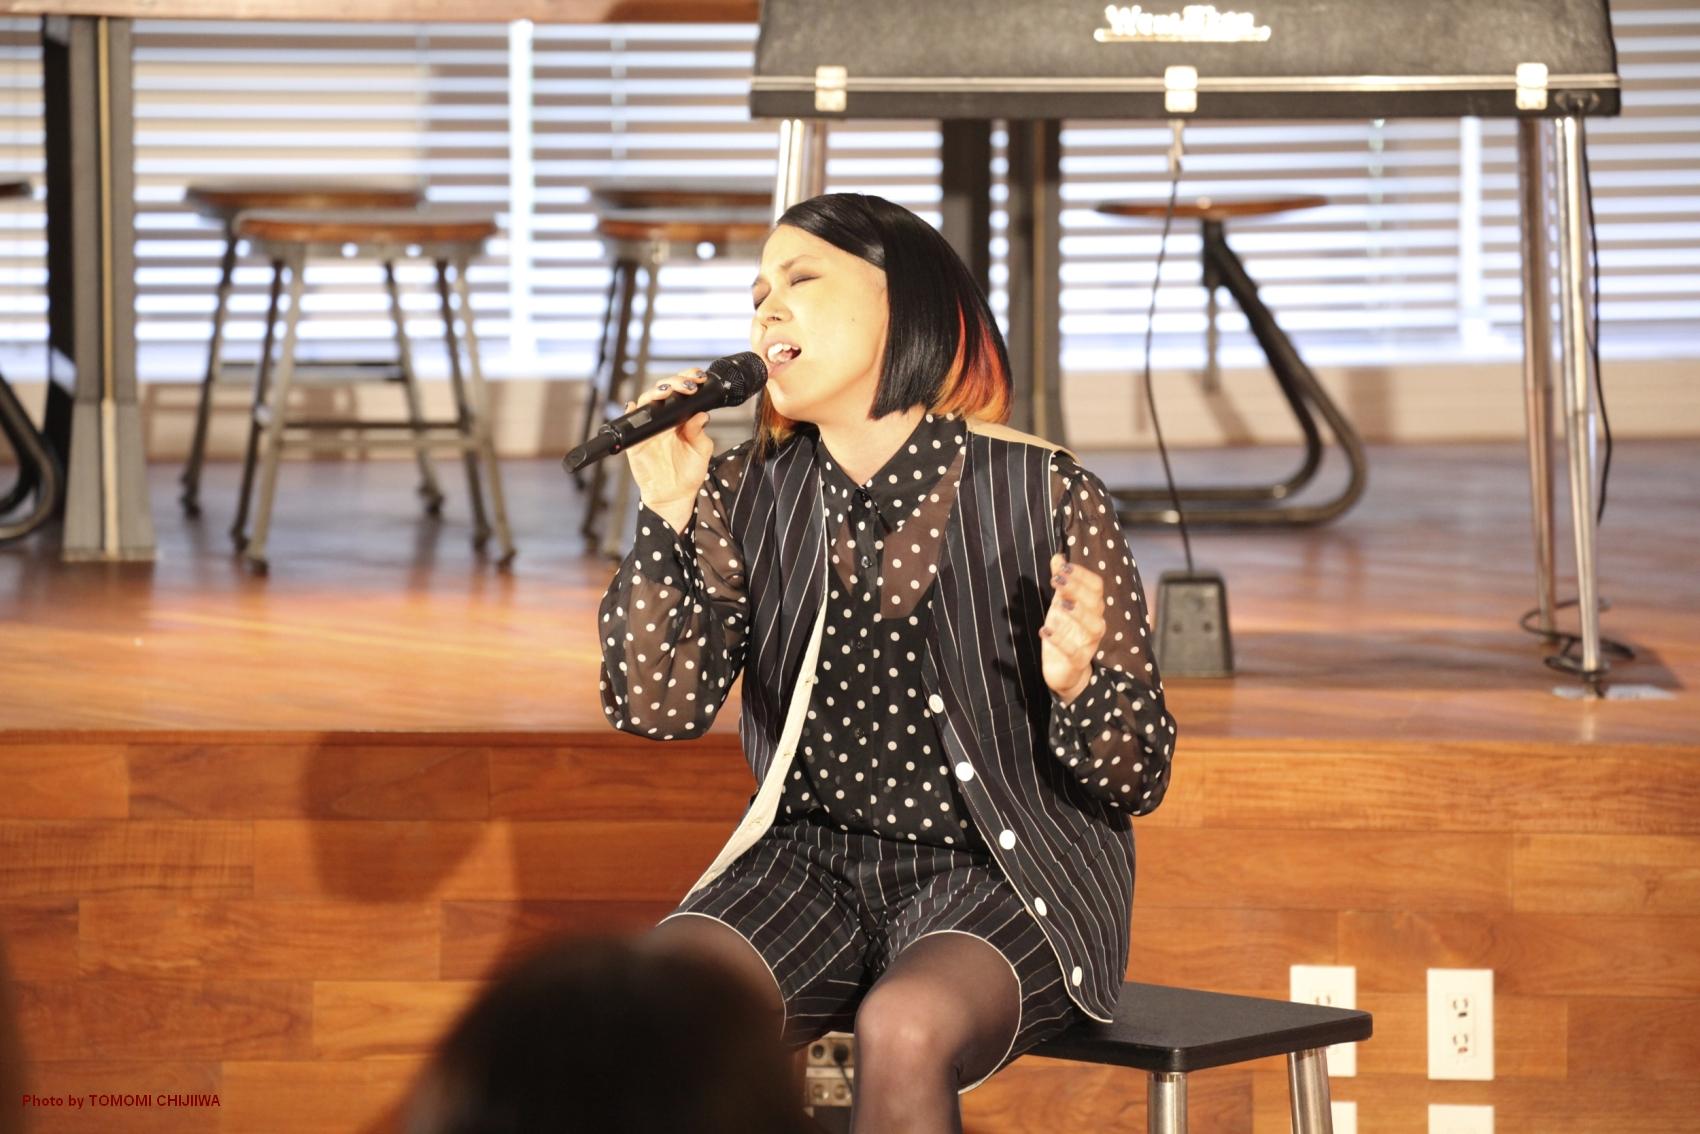 Ai 母の日に50組100名の親子の前で新曲 ママへ を披露 ユニバーサル ミュージック合同会社のプレスリリース